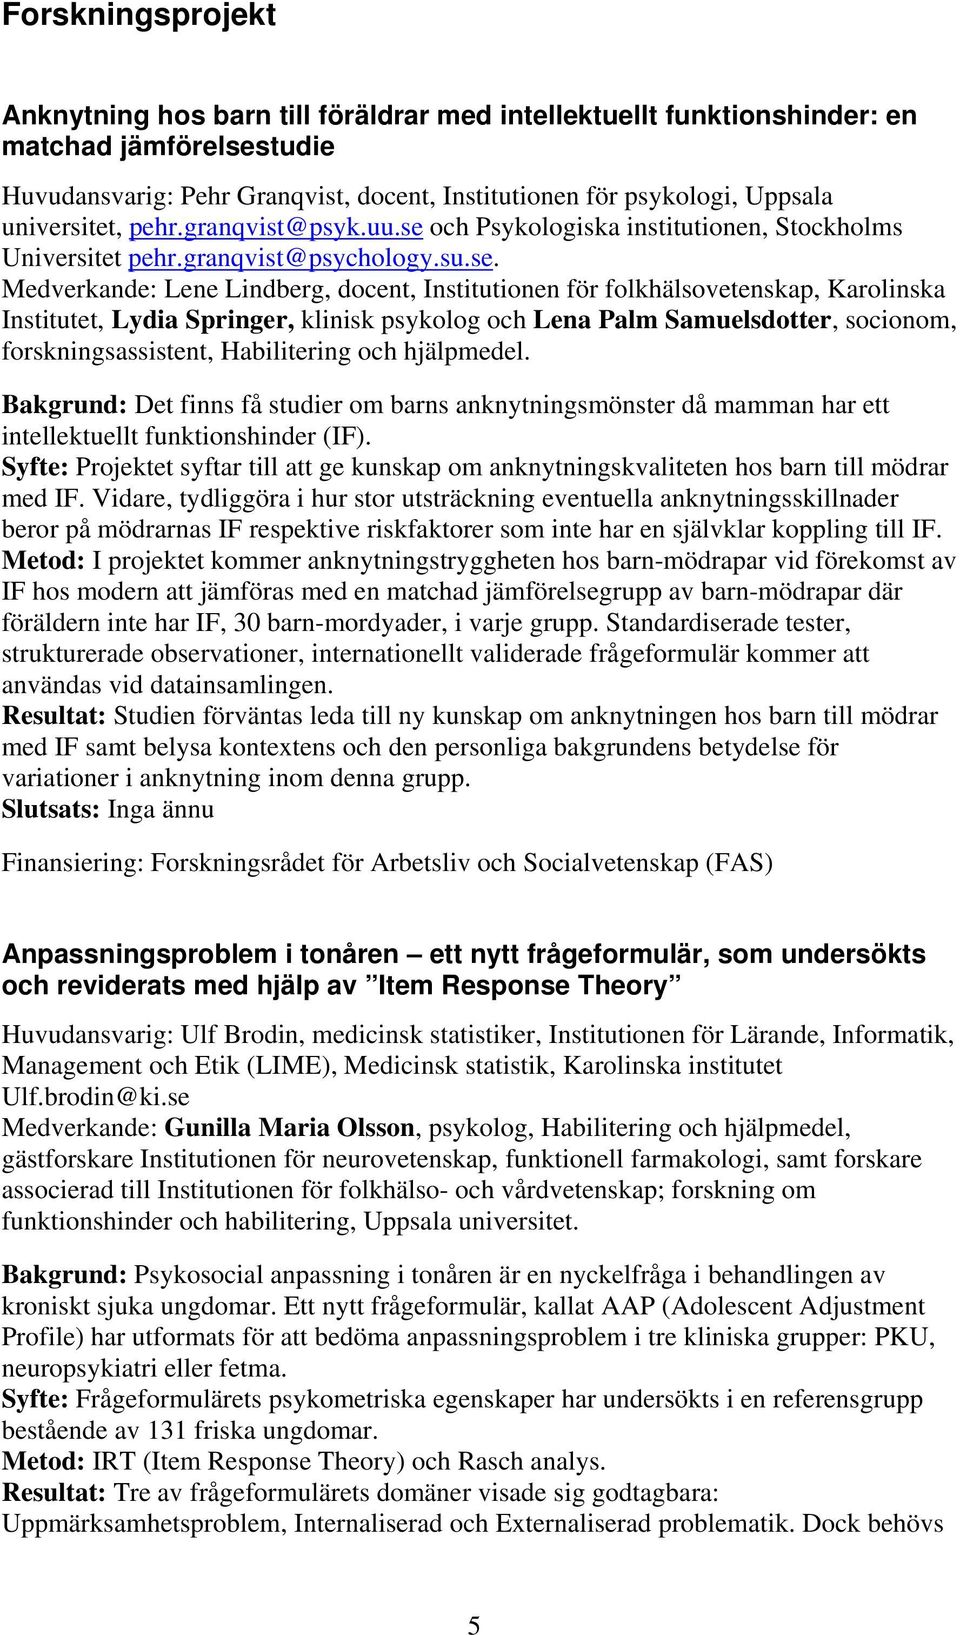 och Psykologiska institutionen, Stockholms Universitet pehr.granqvist@psychology.su.se.